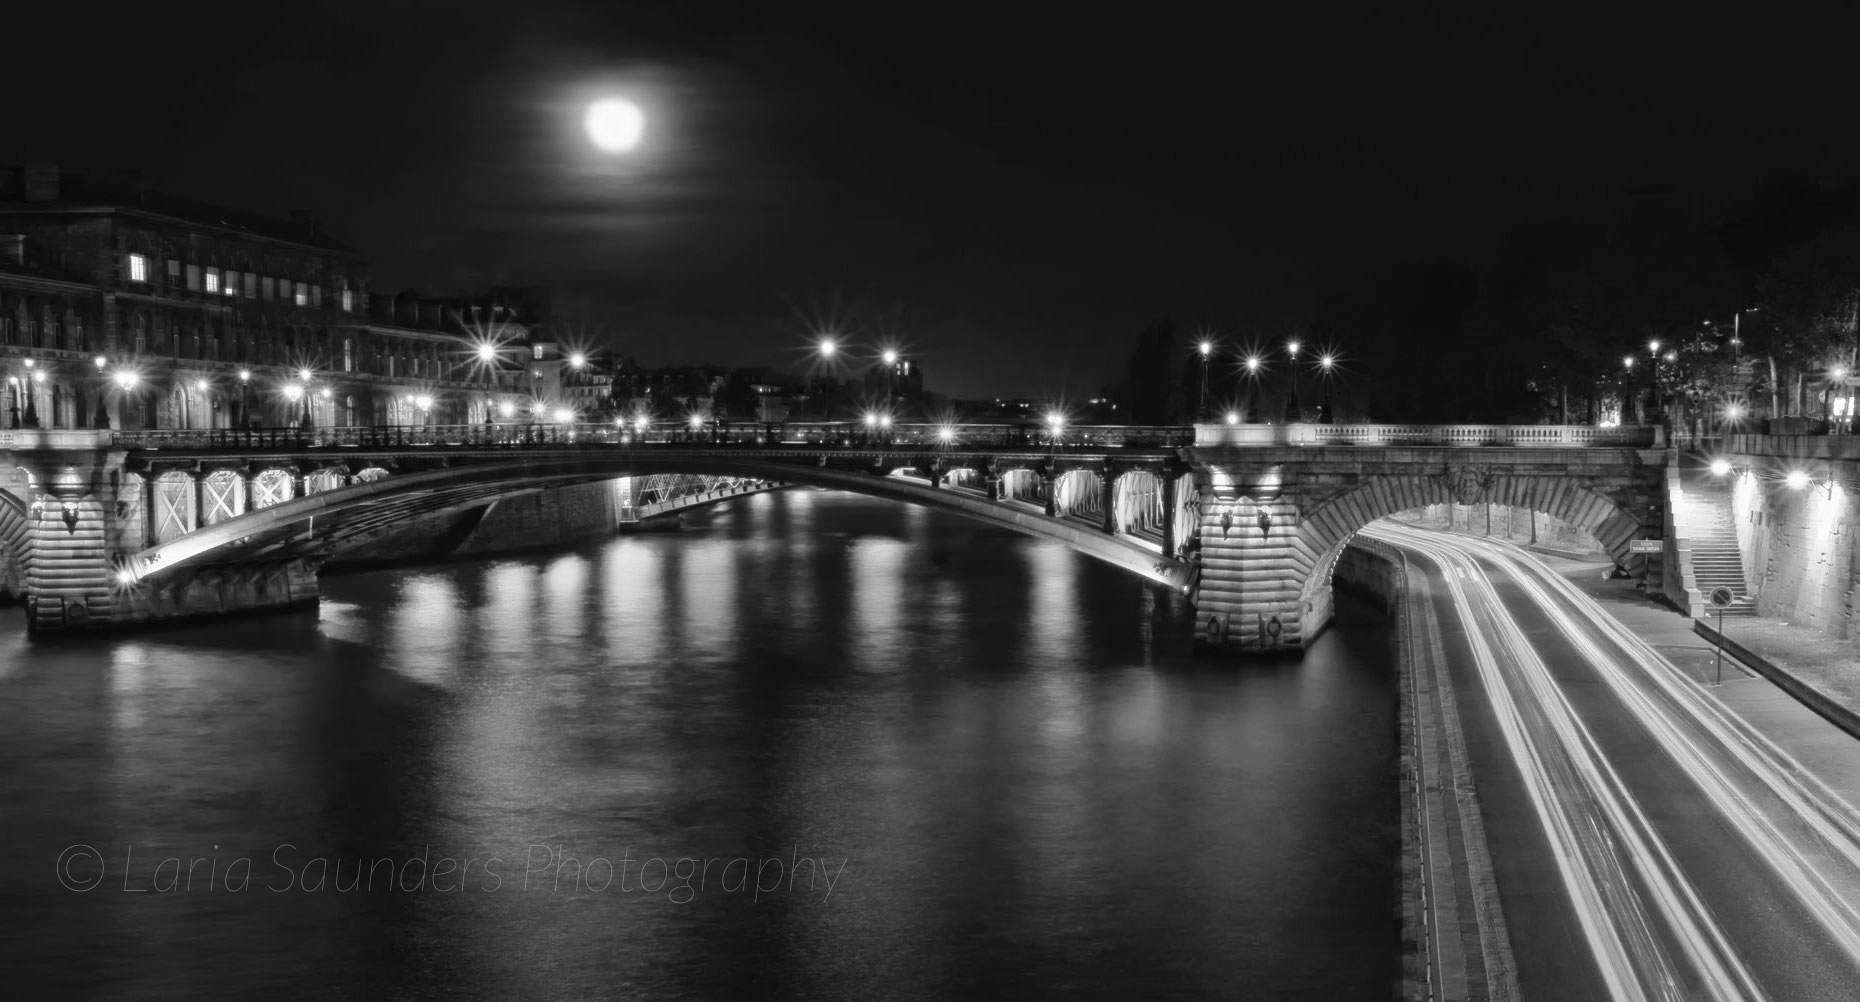 Paris-Photos-Full-Moon-Over-Paris-Laria-Saunders-blknWht